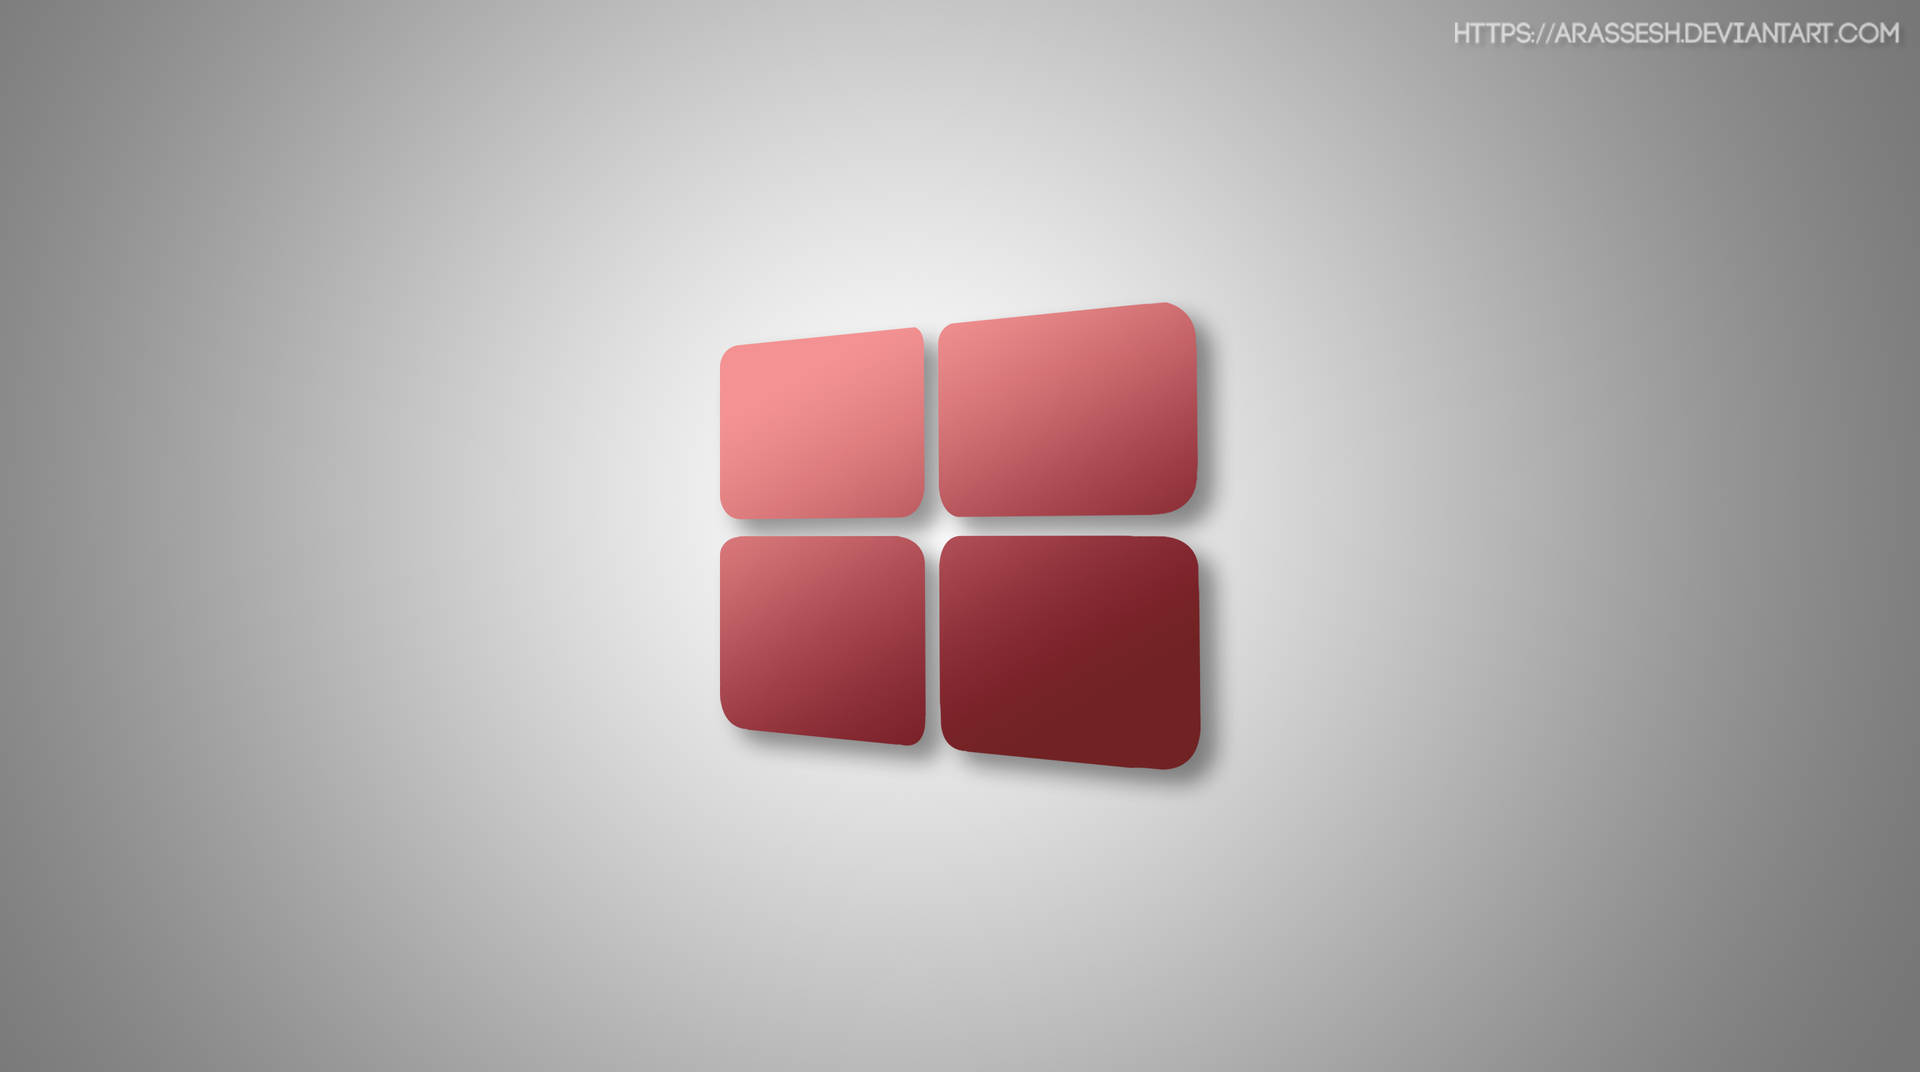 Minimalist Windows 10 Hd Red Logo Wallpaper